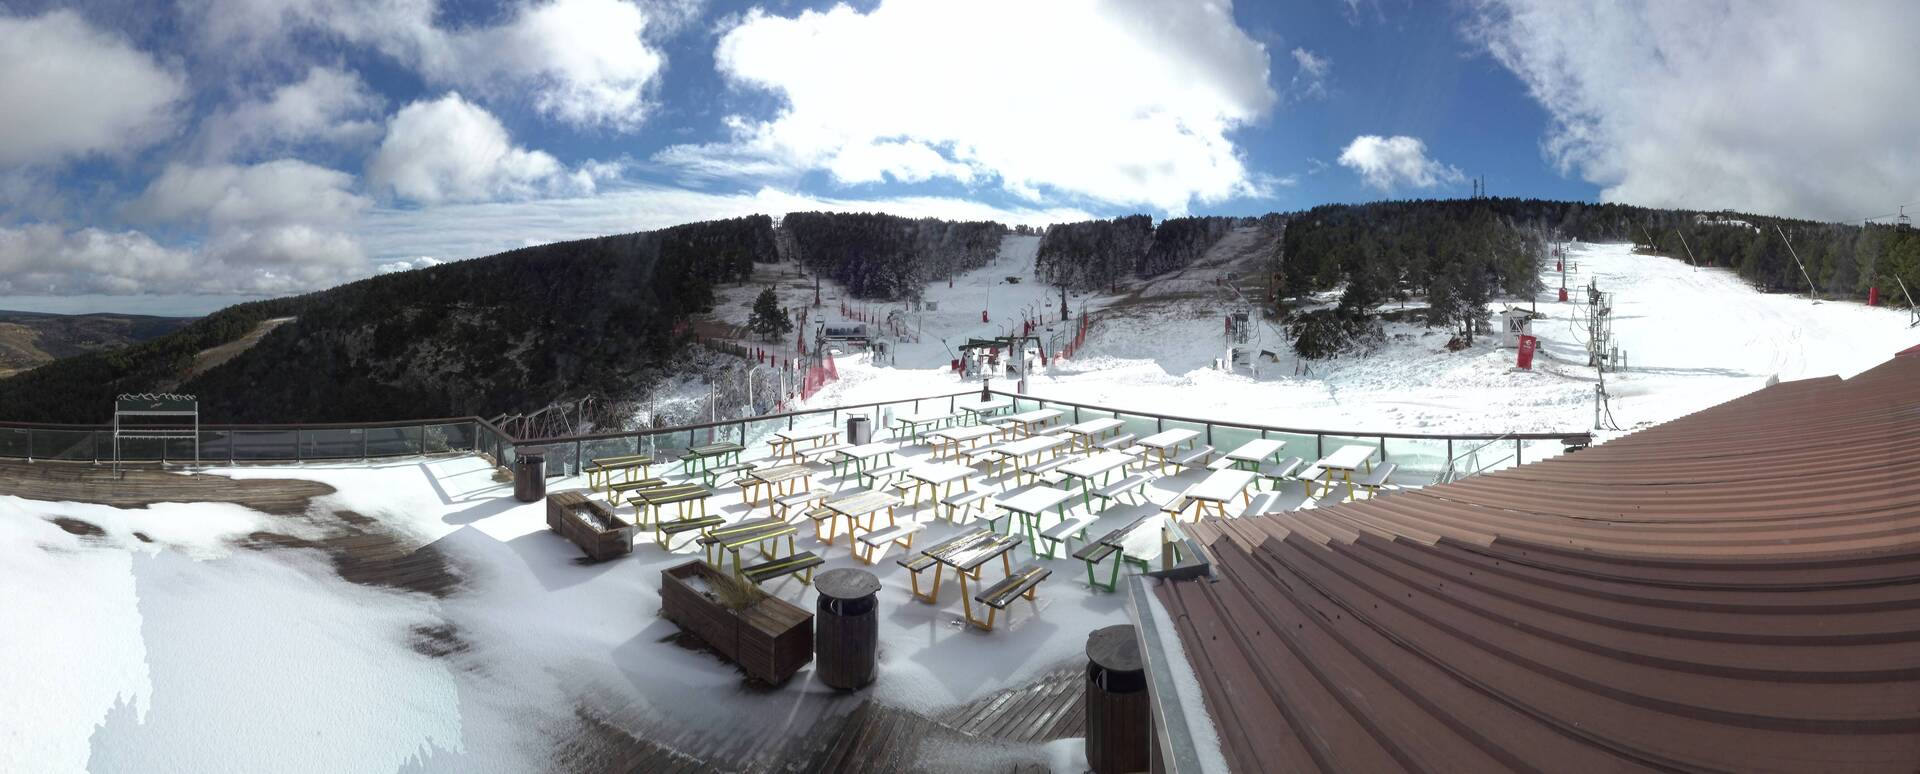 Base de la estación de esquí de Valdelinares